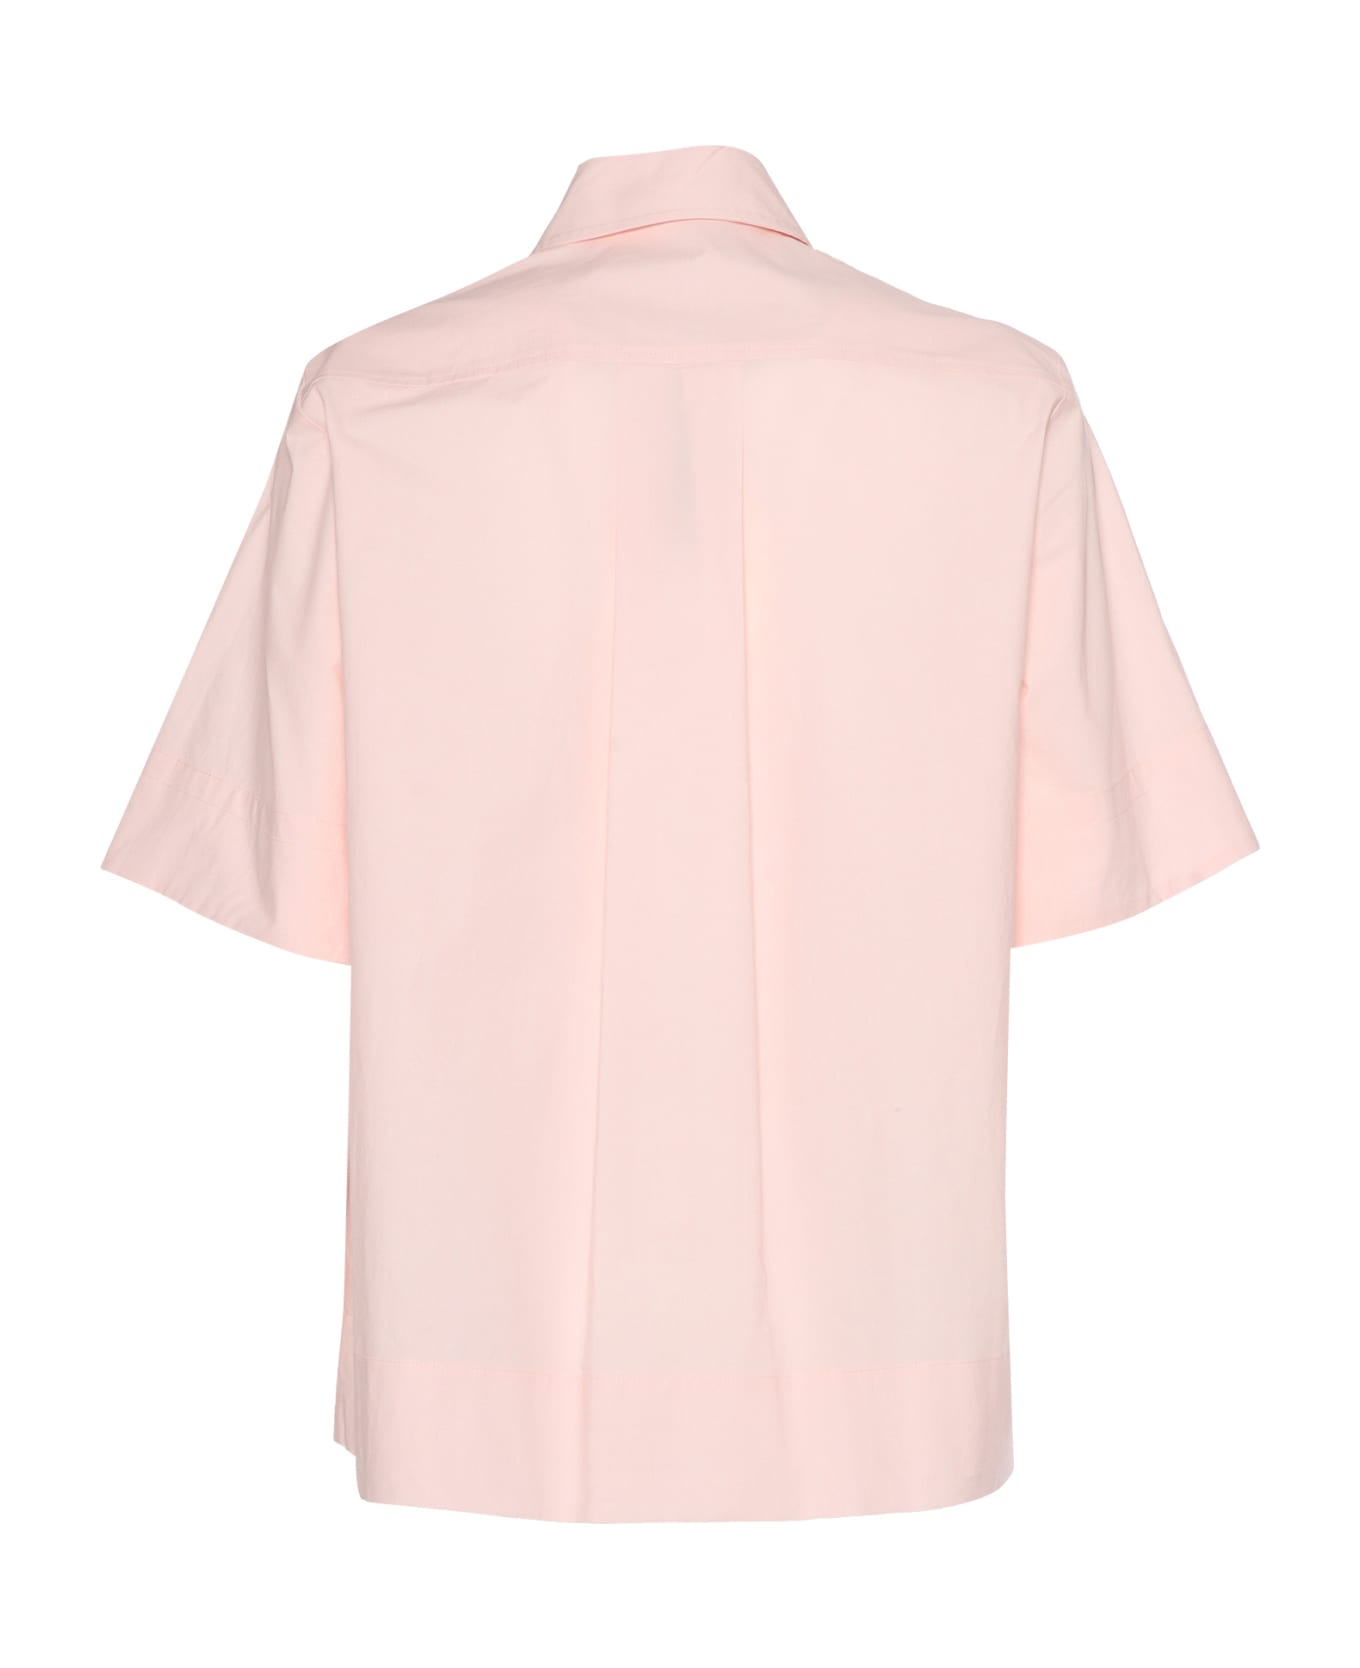 Parosh Pink Short-sleeved Shirt - PINK シャツ